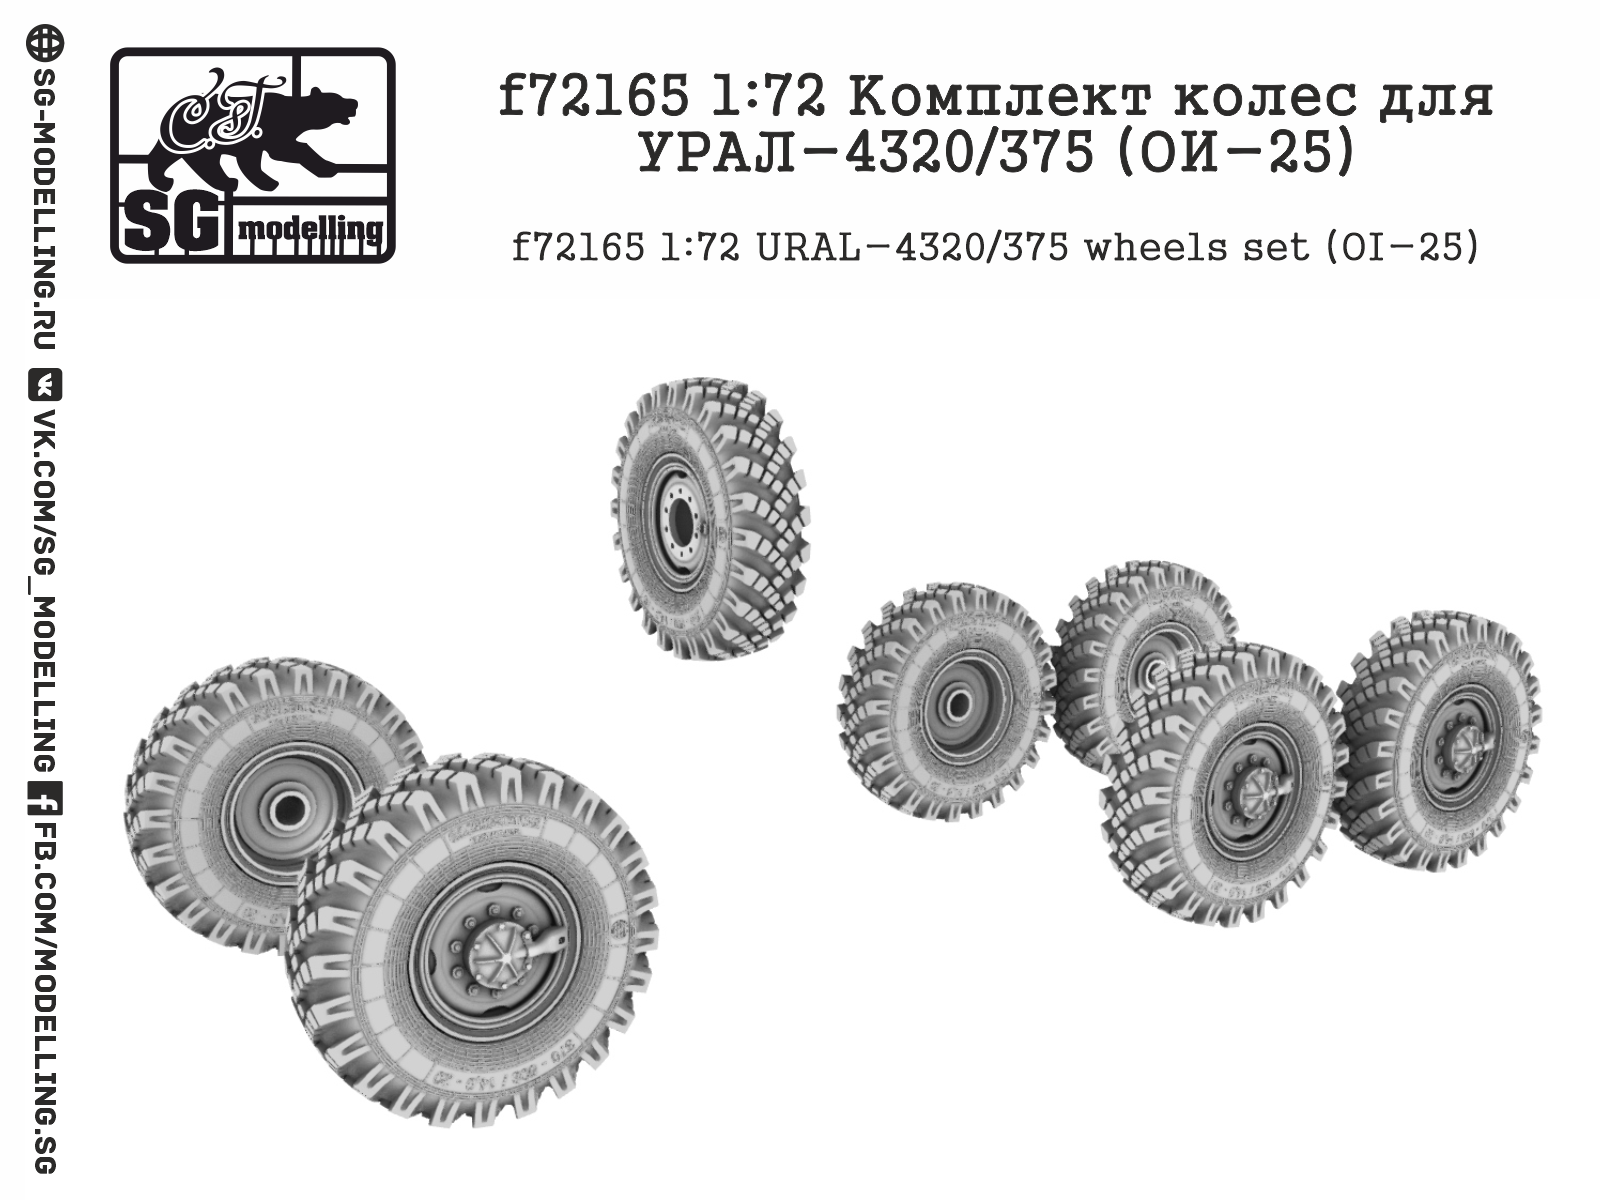 URAL-4320/375 (OI-25) wheels